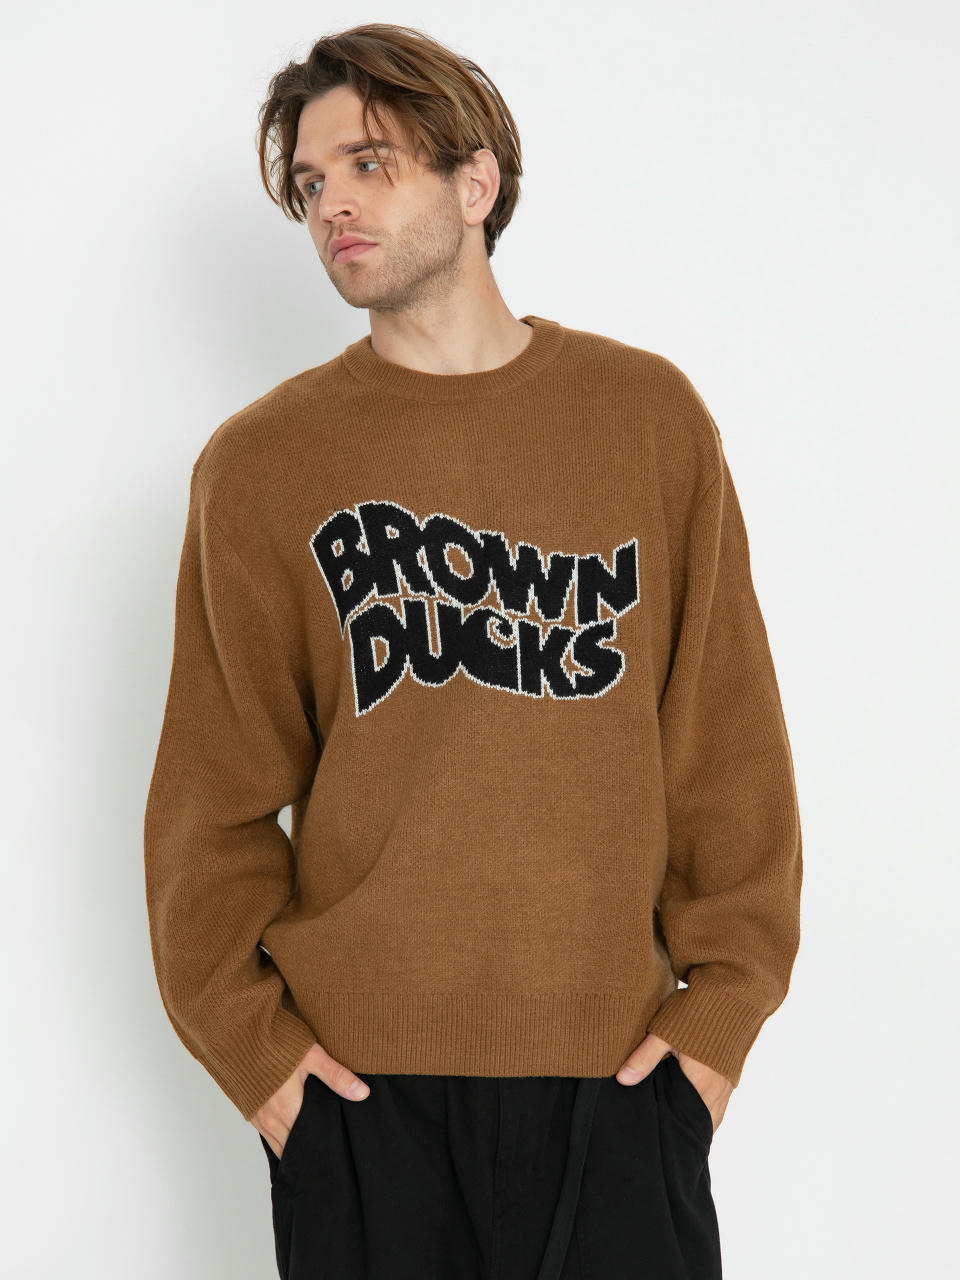 Sveter Carhartt WIP Brown Ducks (hamilton brown)